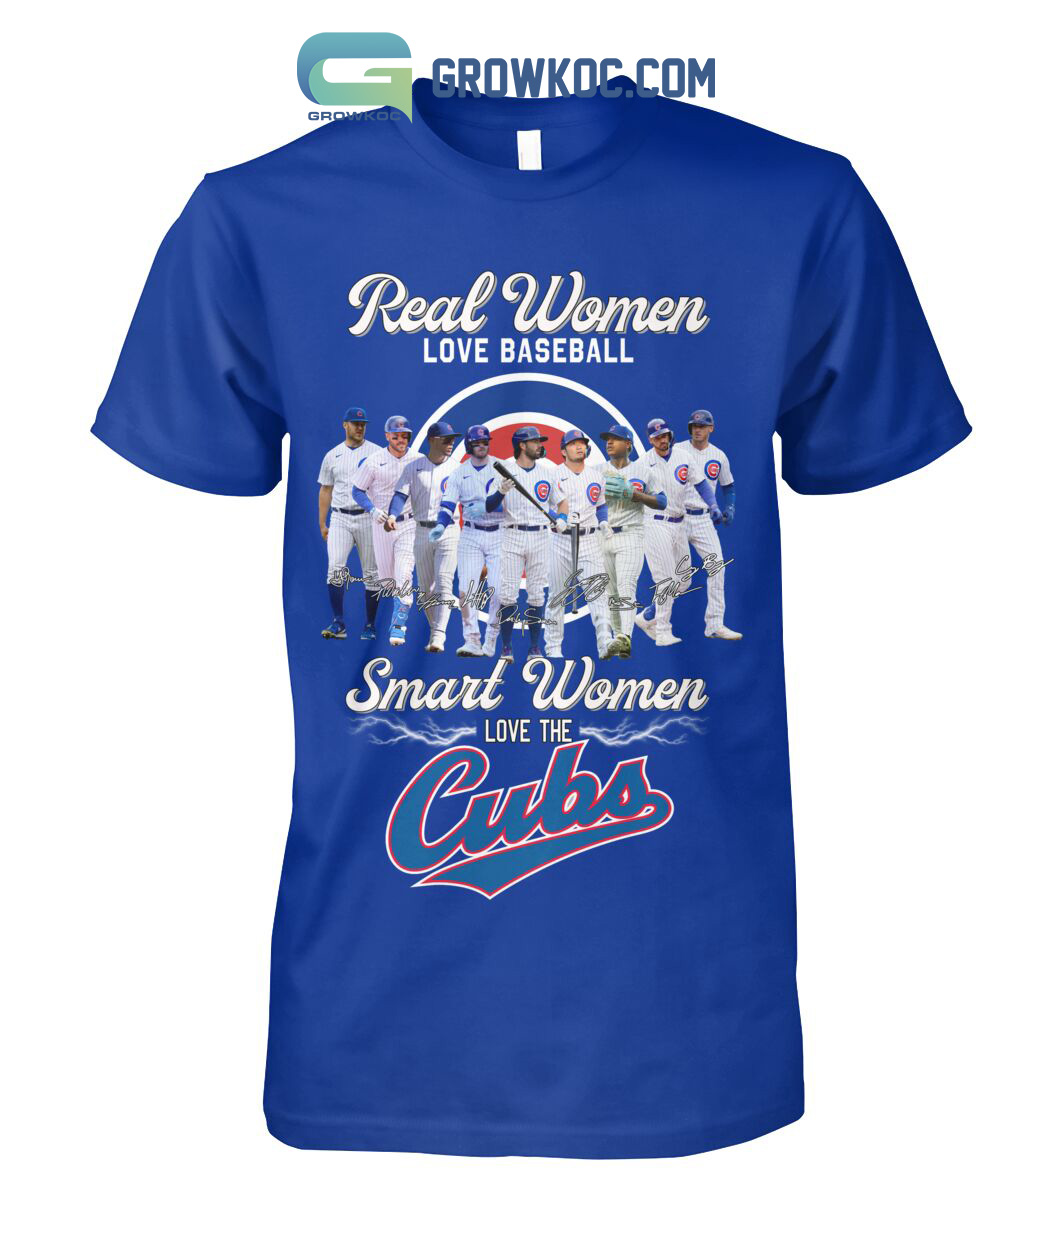 Real Women Love Baseball Smart Women Love The Cubs T Shirt - Growkoc